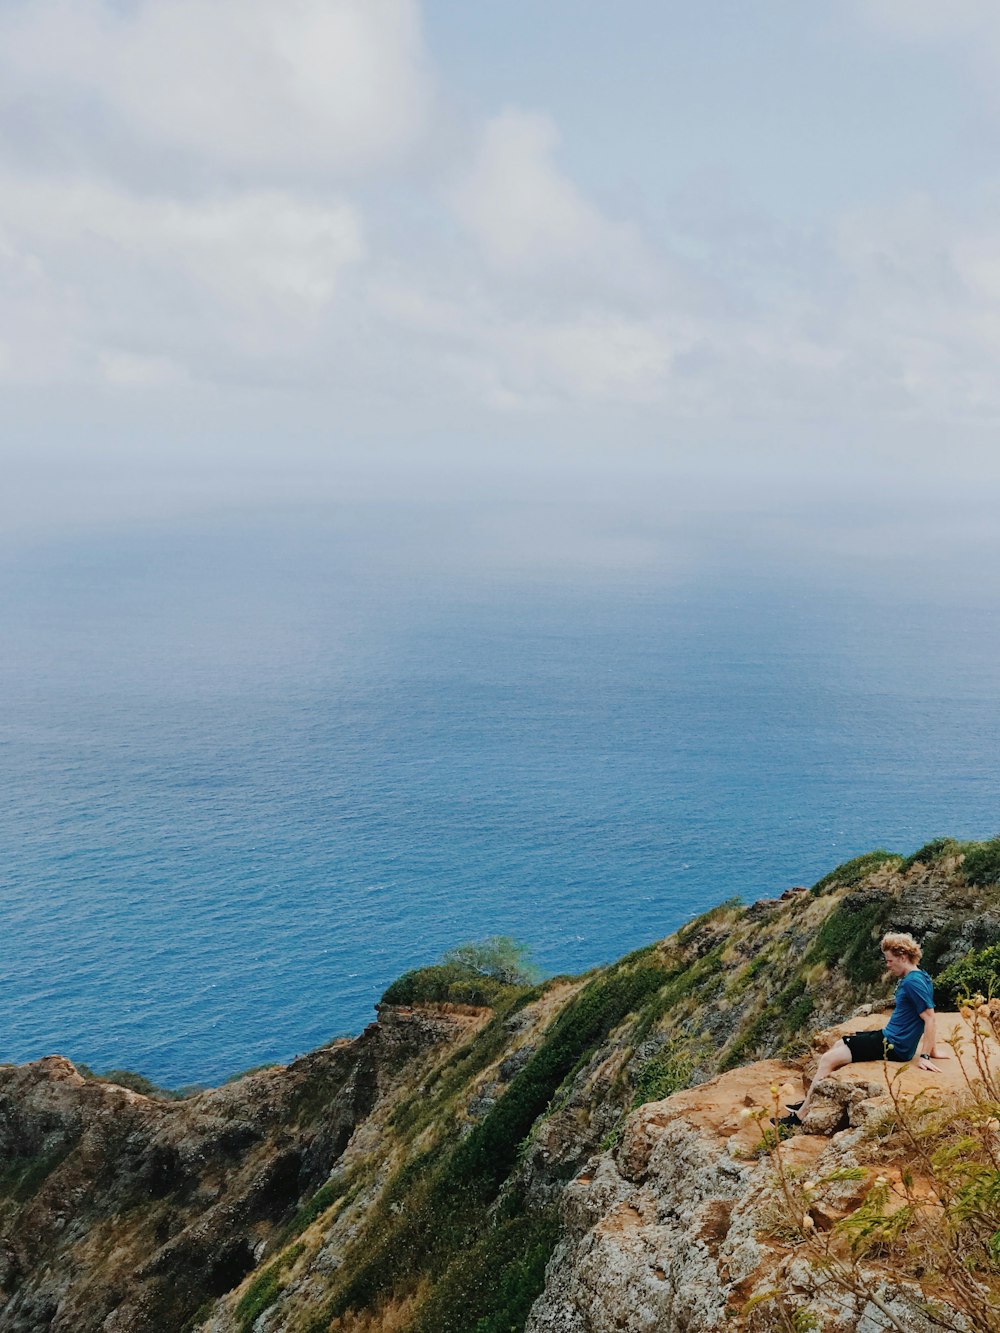 homme en chemise bleue assis sur la formation rocheuse près de la mer bleue sous les nuages blancs pendant la journée